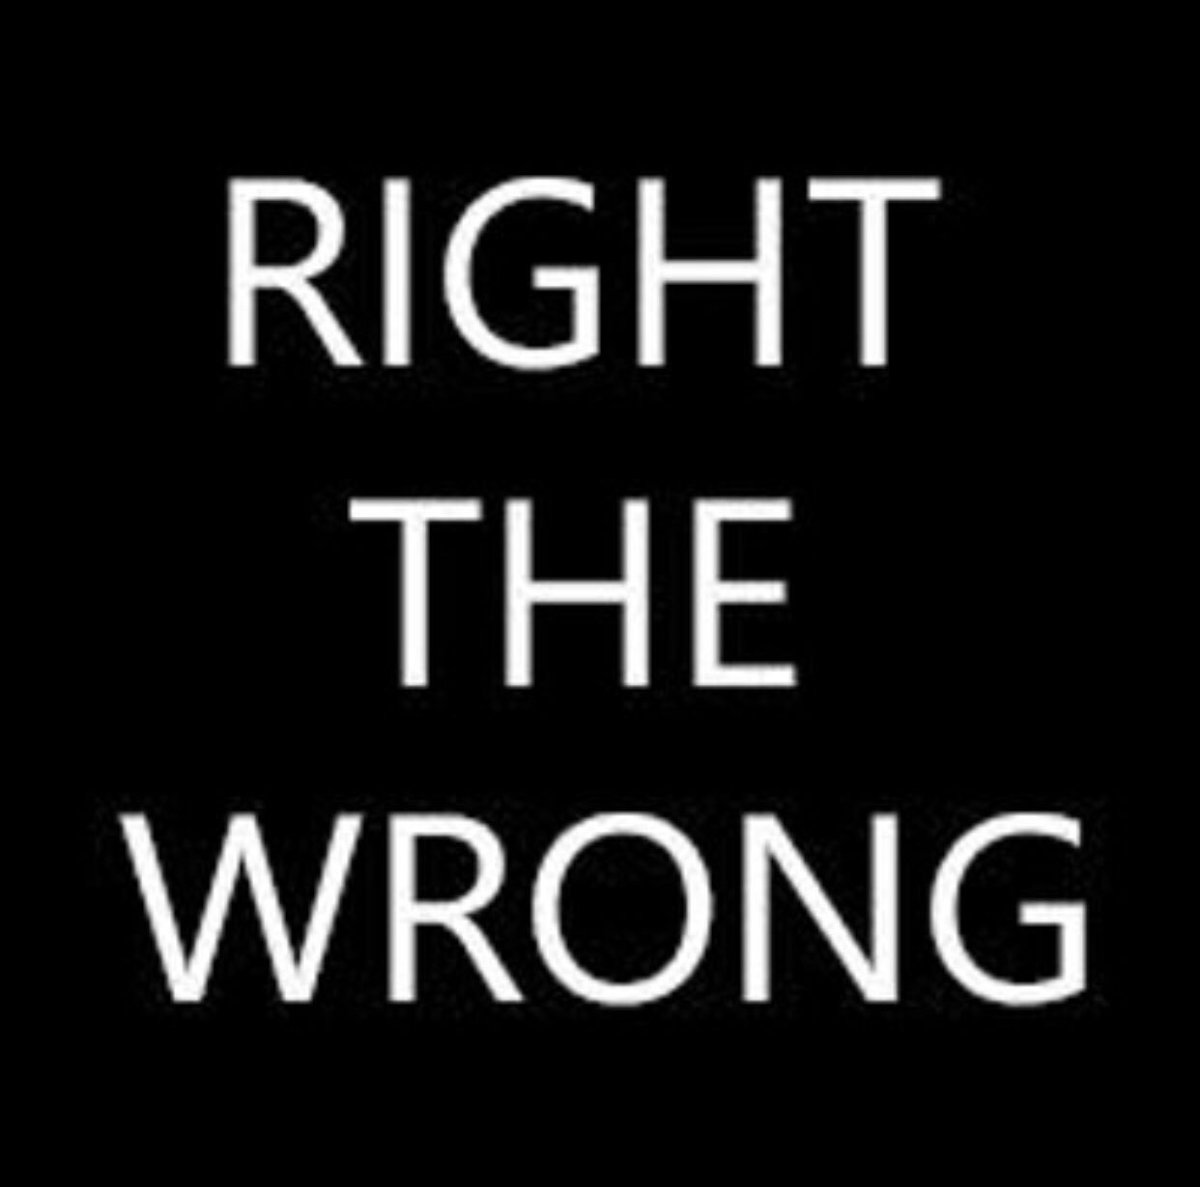 Make a #rightAWrong